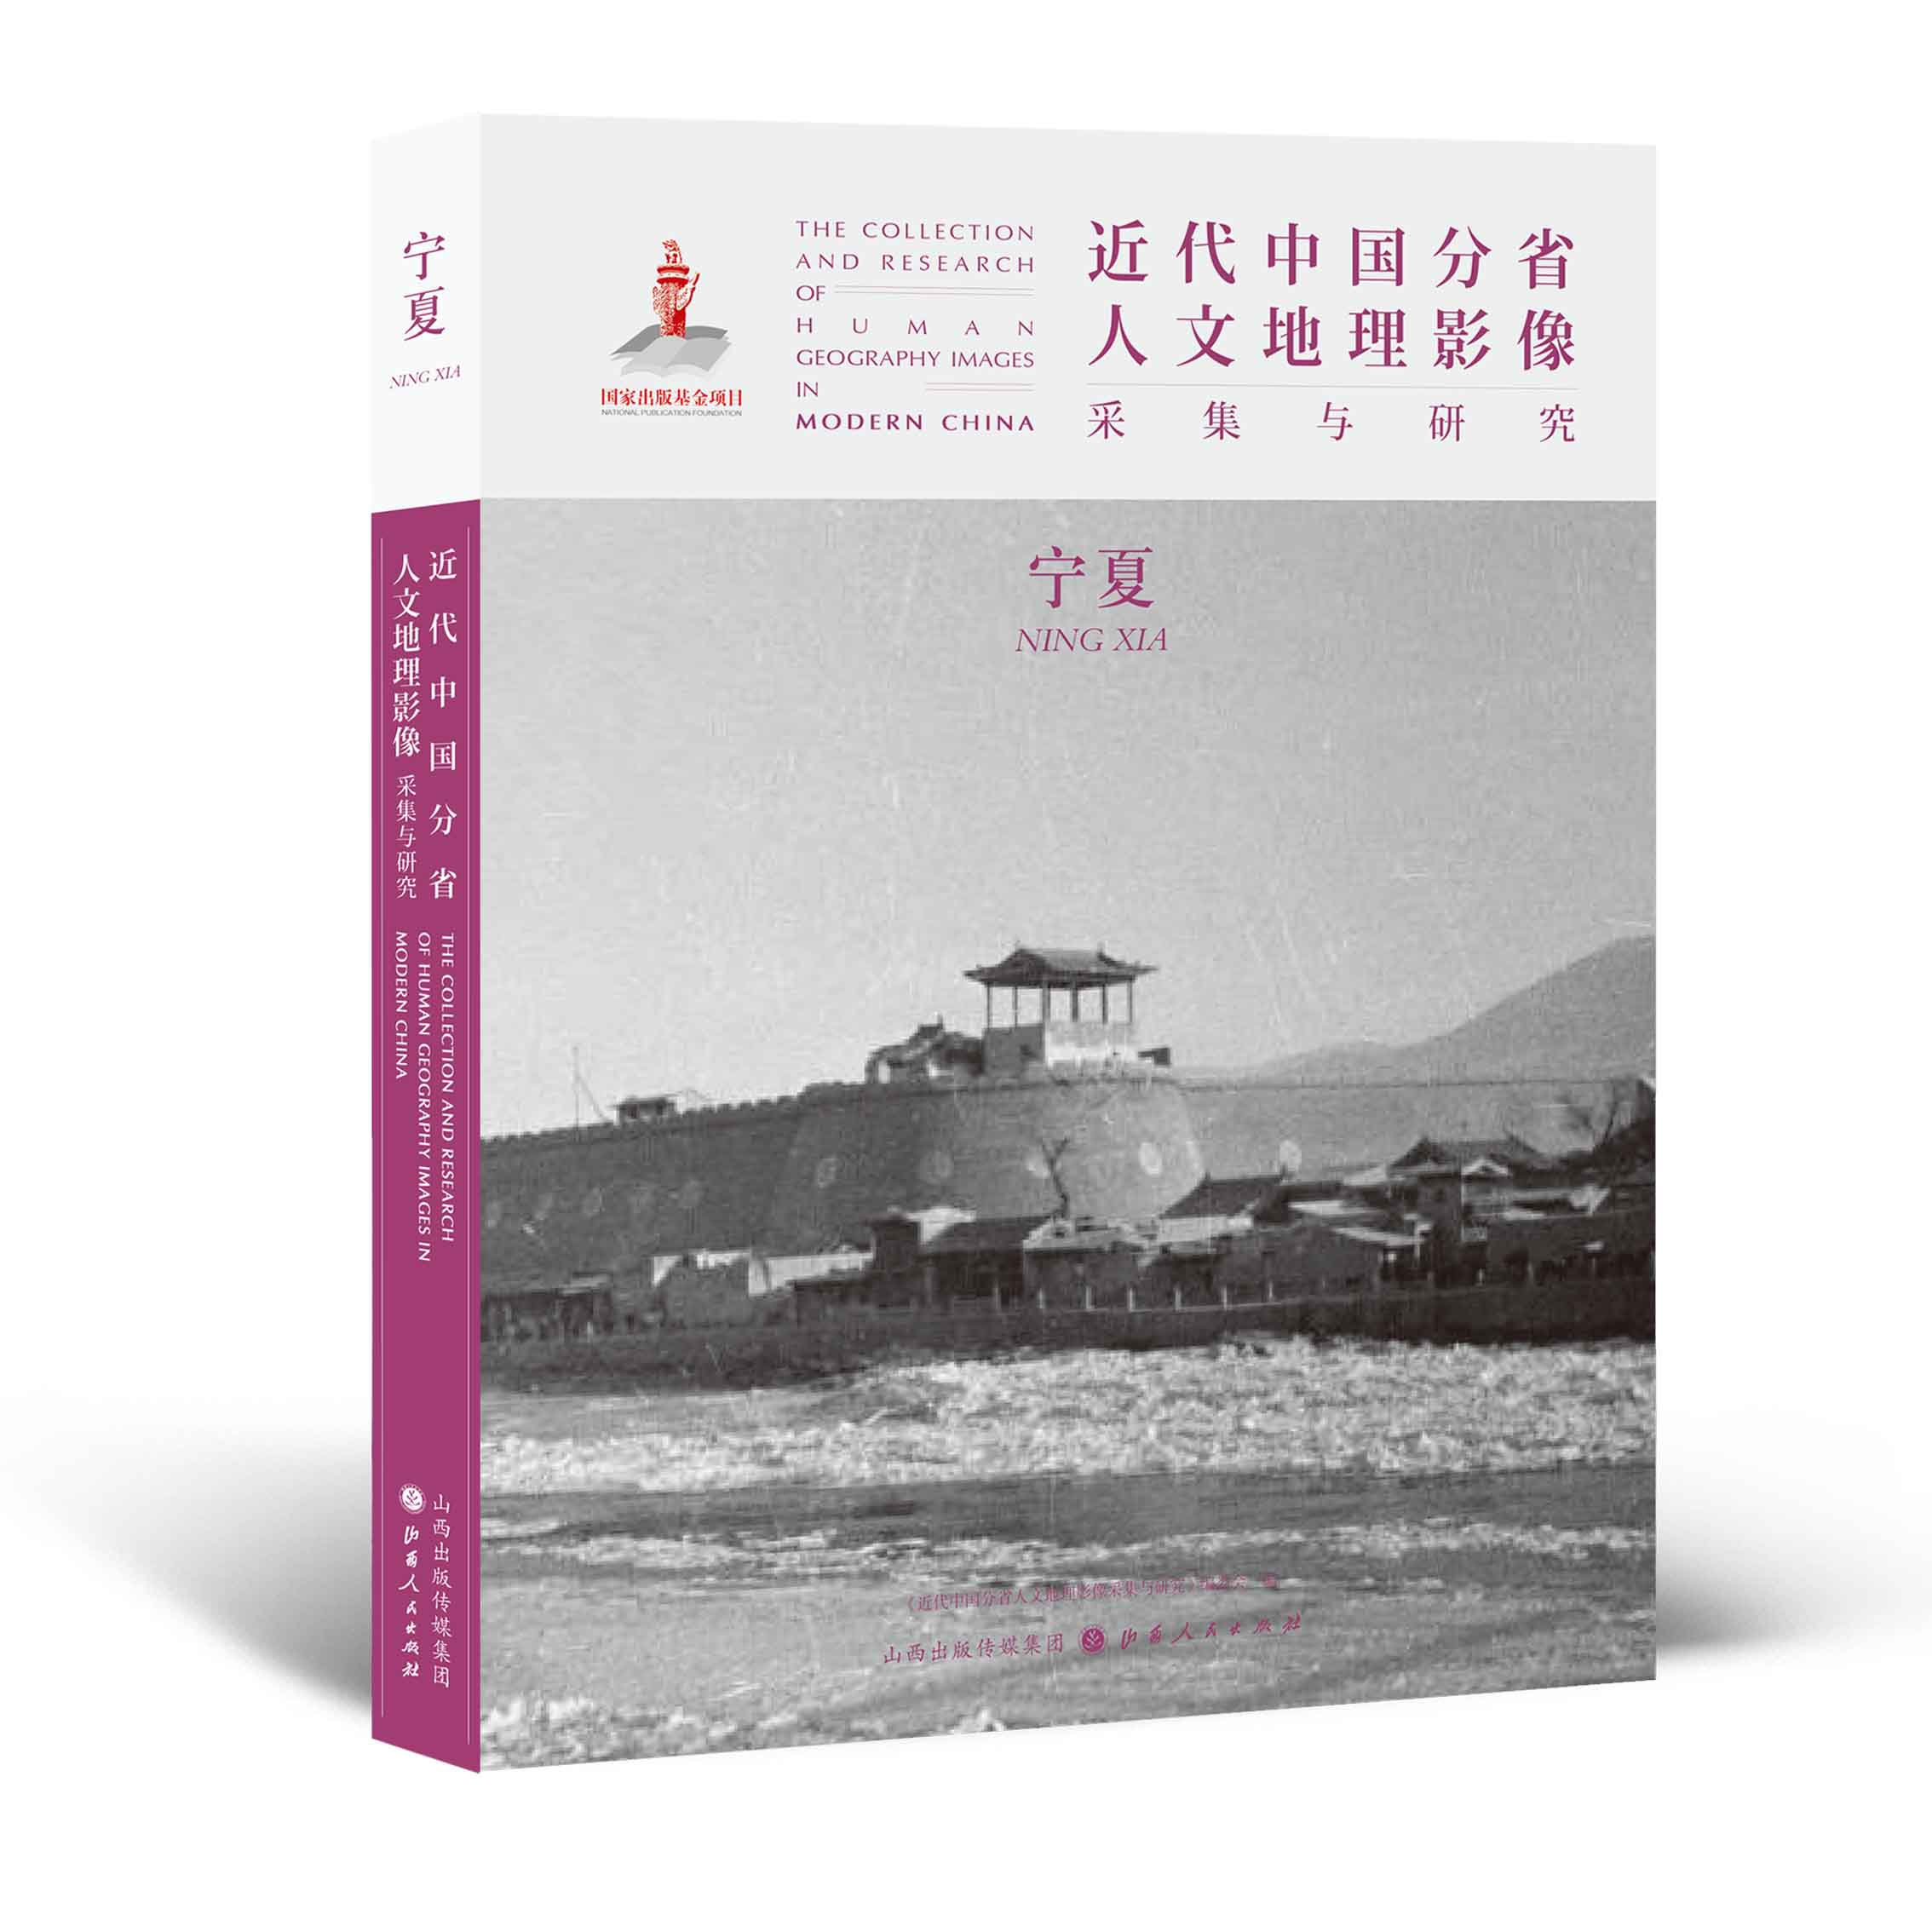 正版包邮 近代中国分省人文地理影像采集与研究 宁夏 国家出版基金项目 全球采集 用图像读懂中国近代史 近代中国的影像读本